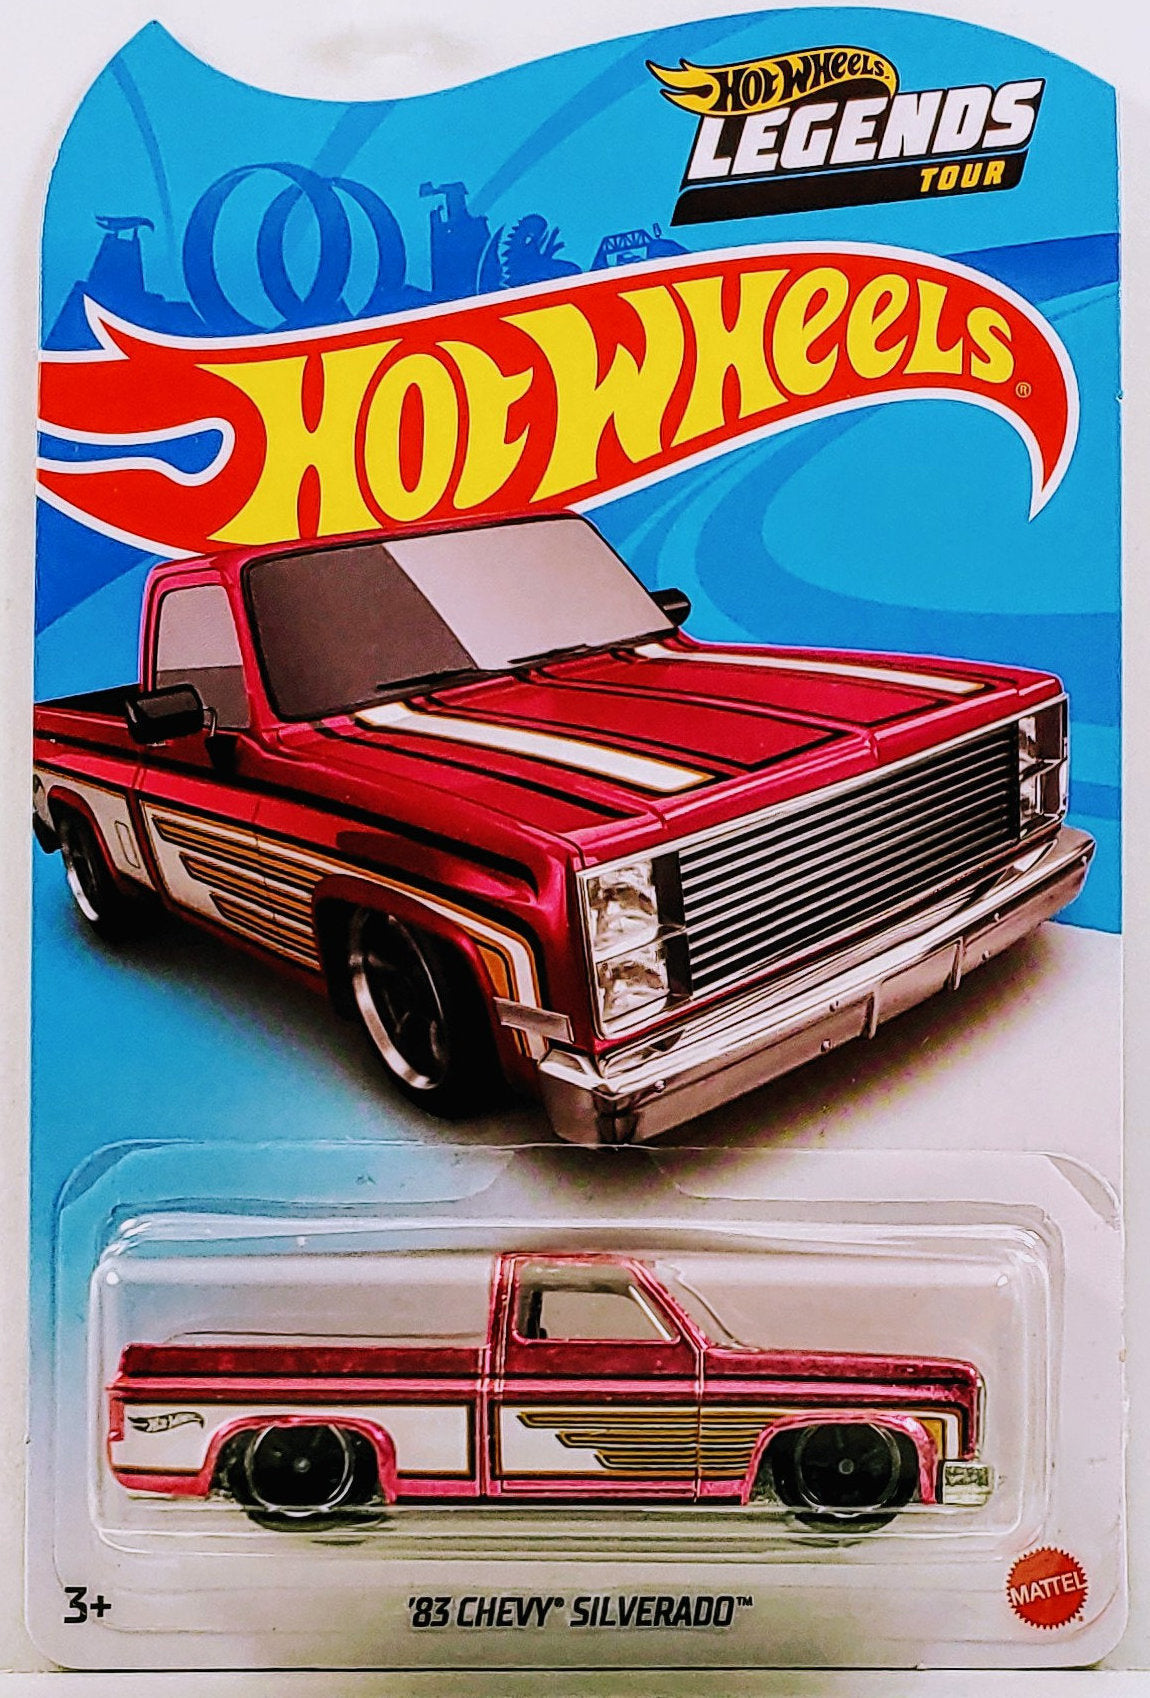 Hot Wheels 2021 - Legends Tour - '83 Chevy Silverado - USA